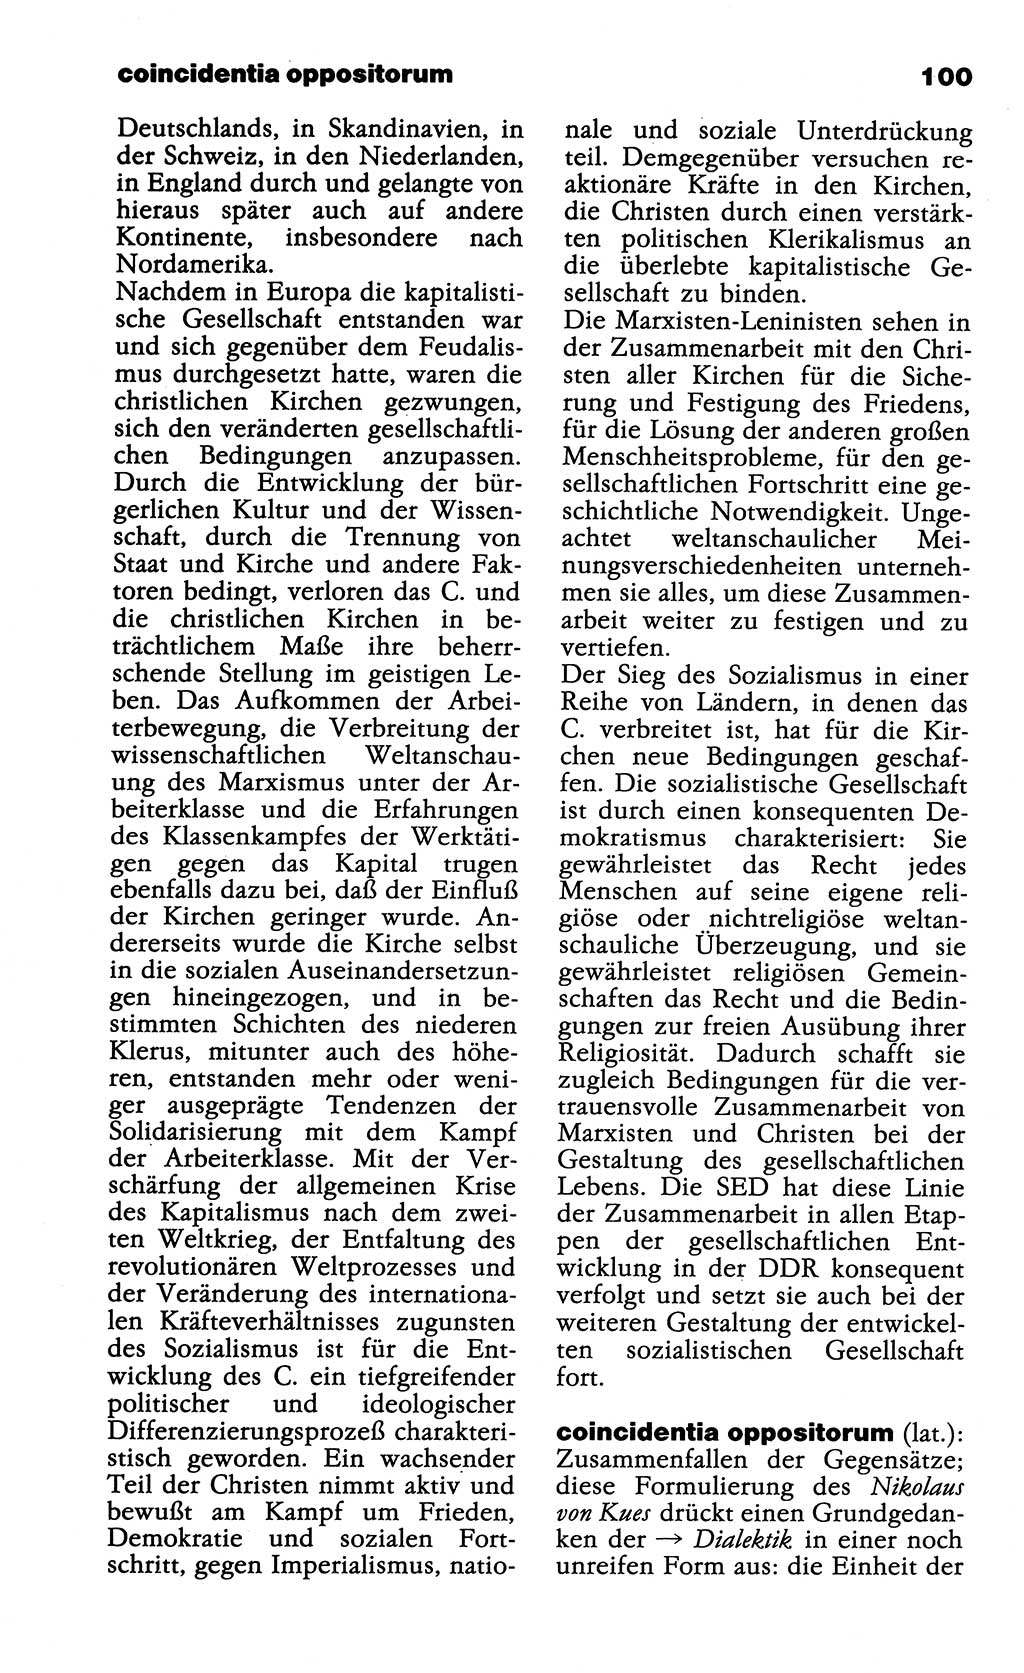 Wörterbuch der marxistisch-leninistischen Philosophie [Deutsche Demokratische Republik (DDR)] 1985, Seite 100 (Wb. ML Phil. DDR 1985, S. 100)